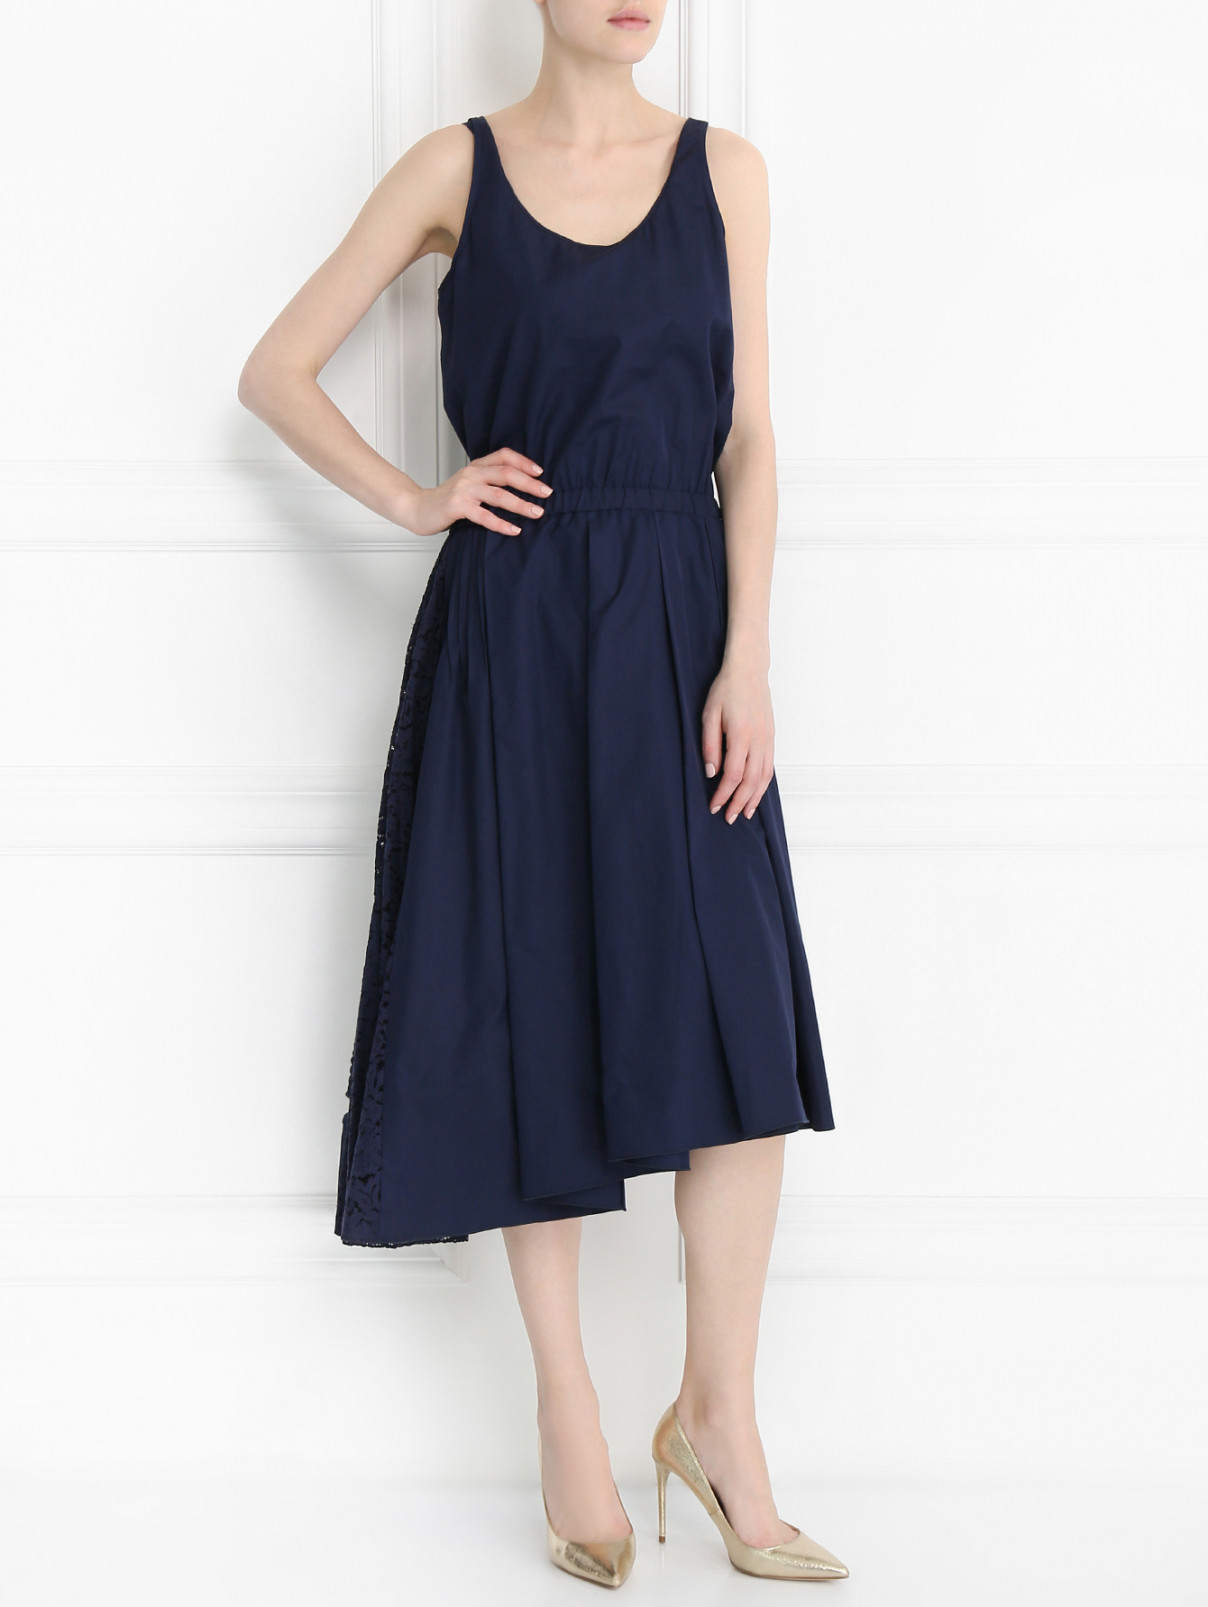 Платье из хлопка со вставкой из кружева N21  –  Модель Общий вид  – Цвет:  Синий